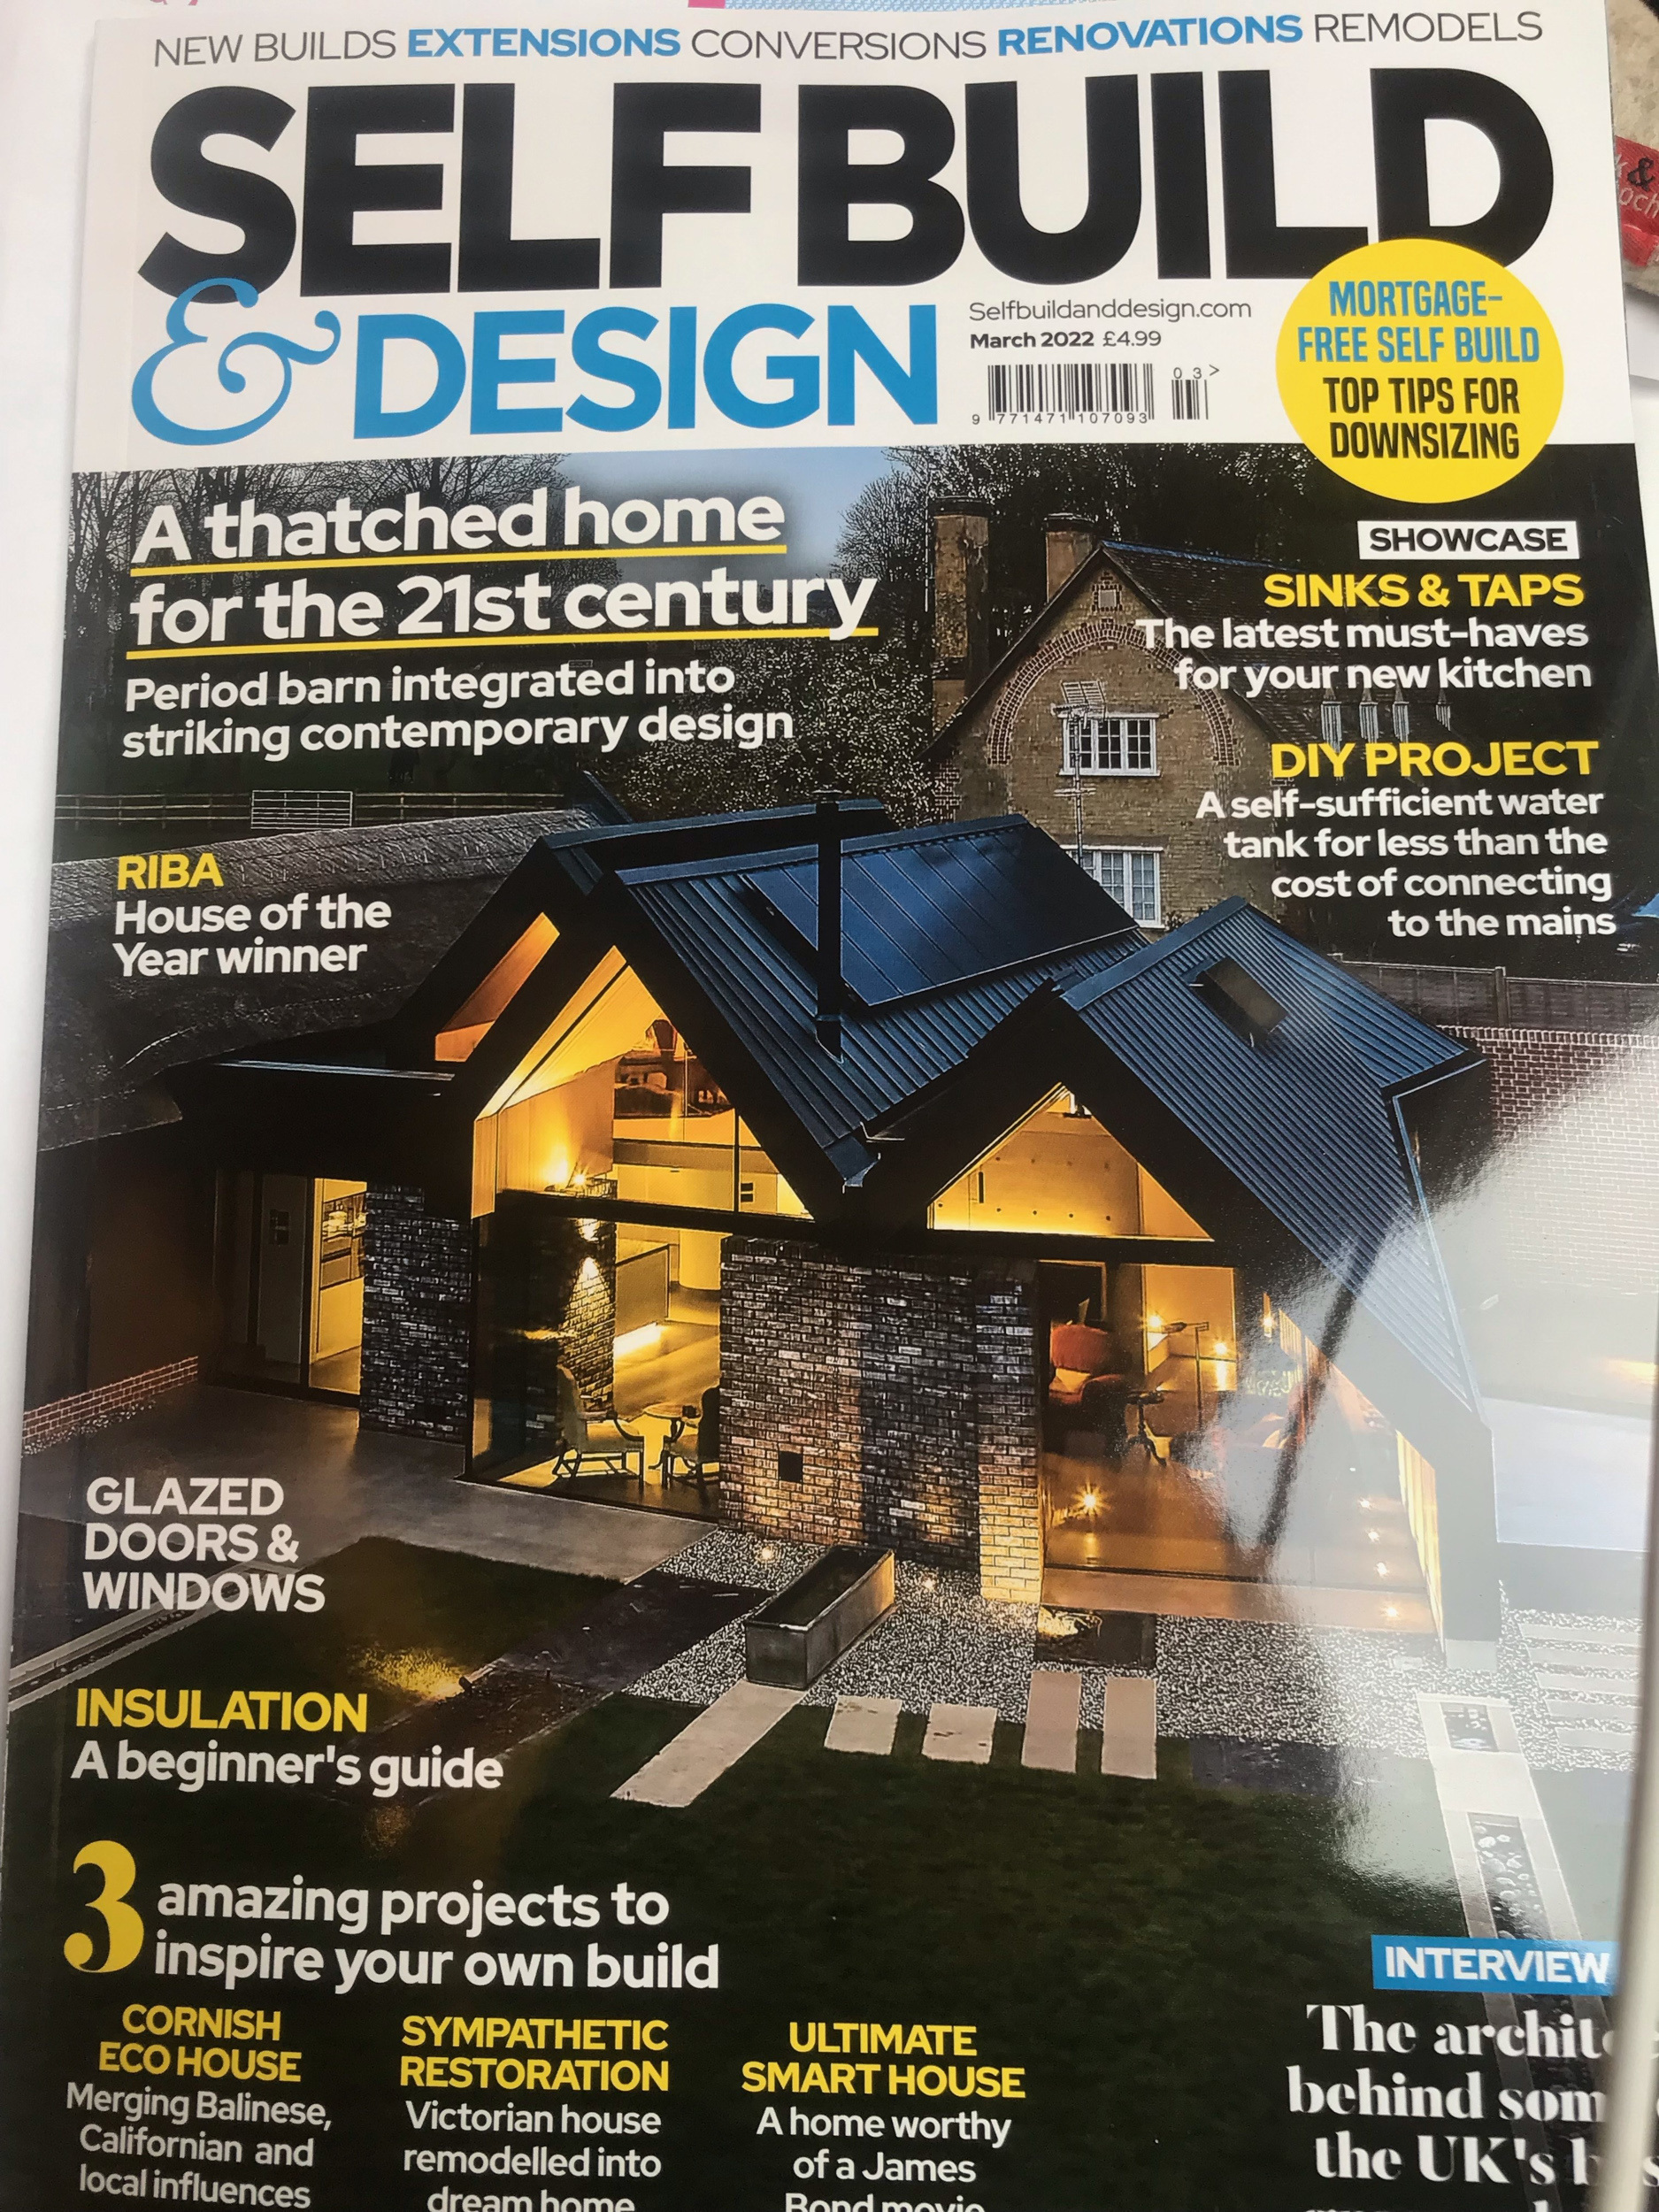 Publication in architecture magazine Self Build and Design | cdc studio cambridge architects